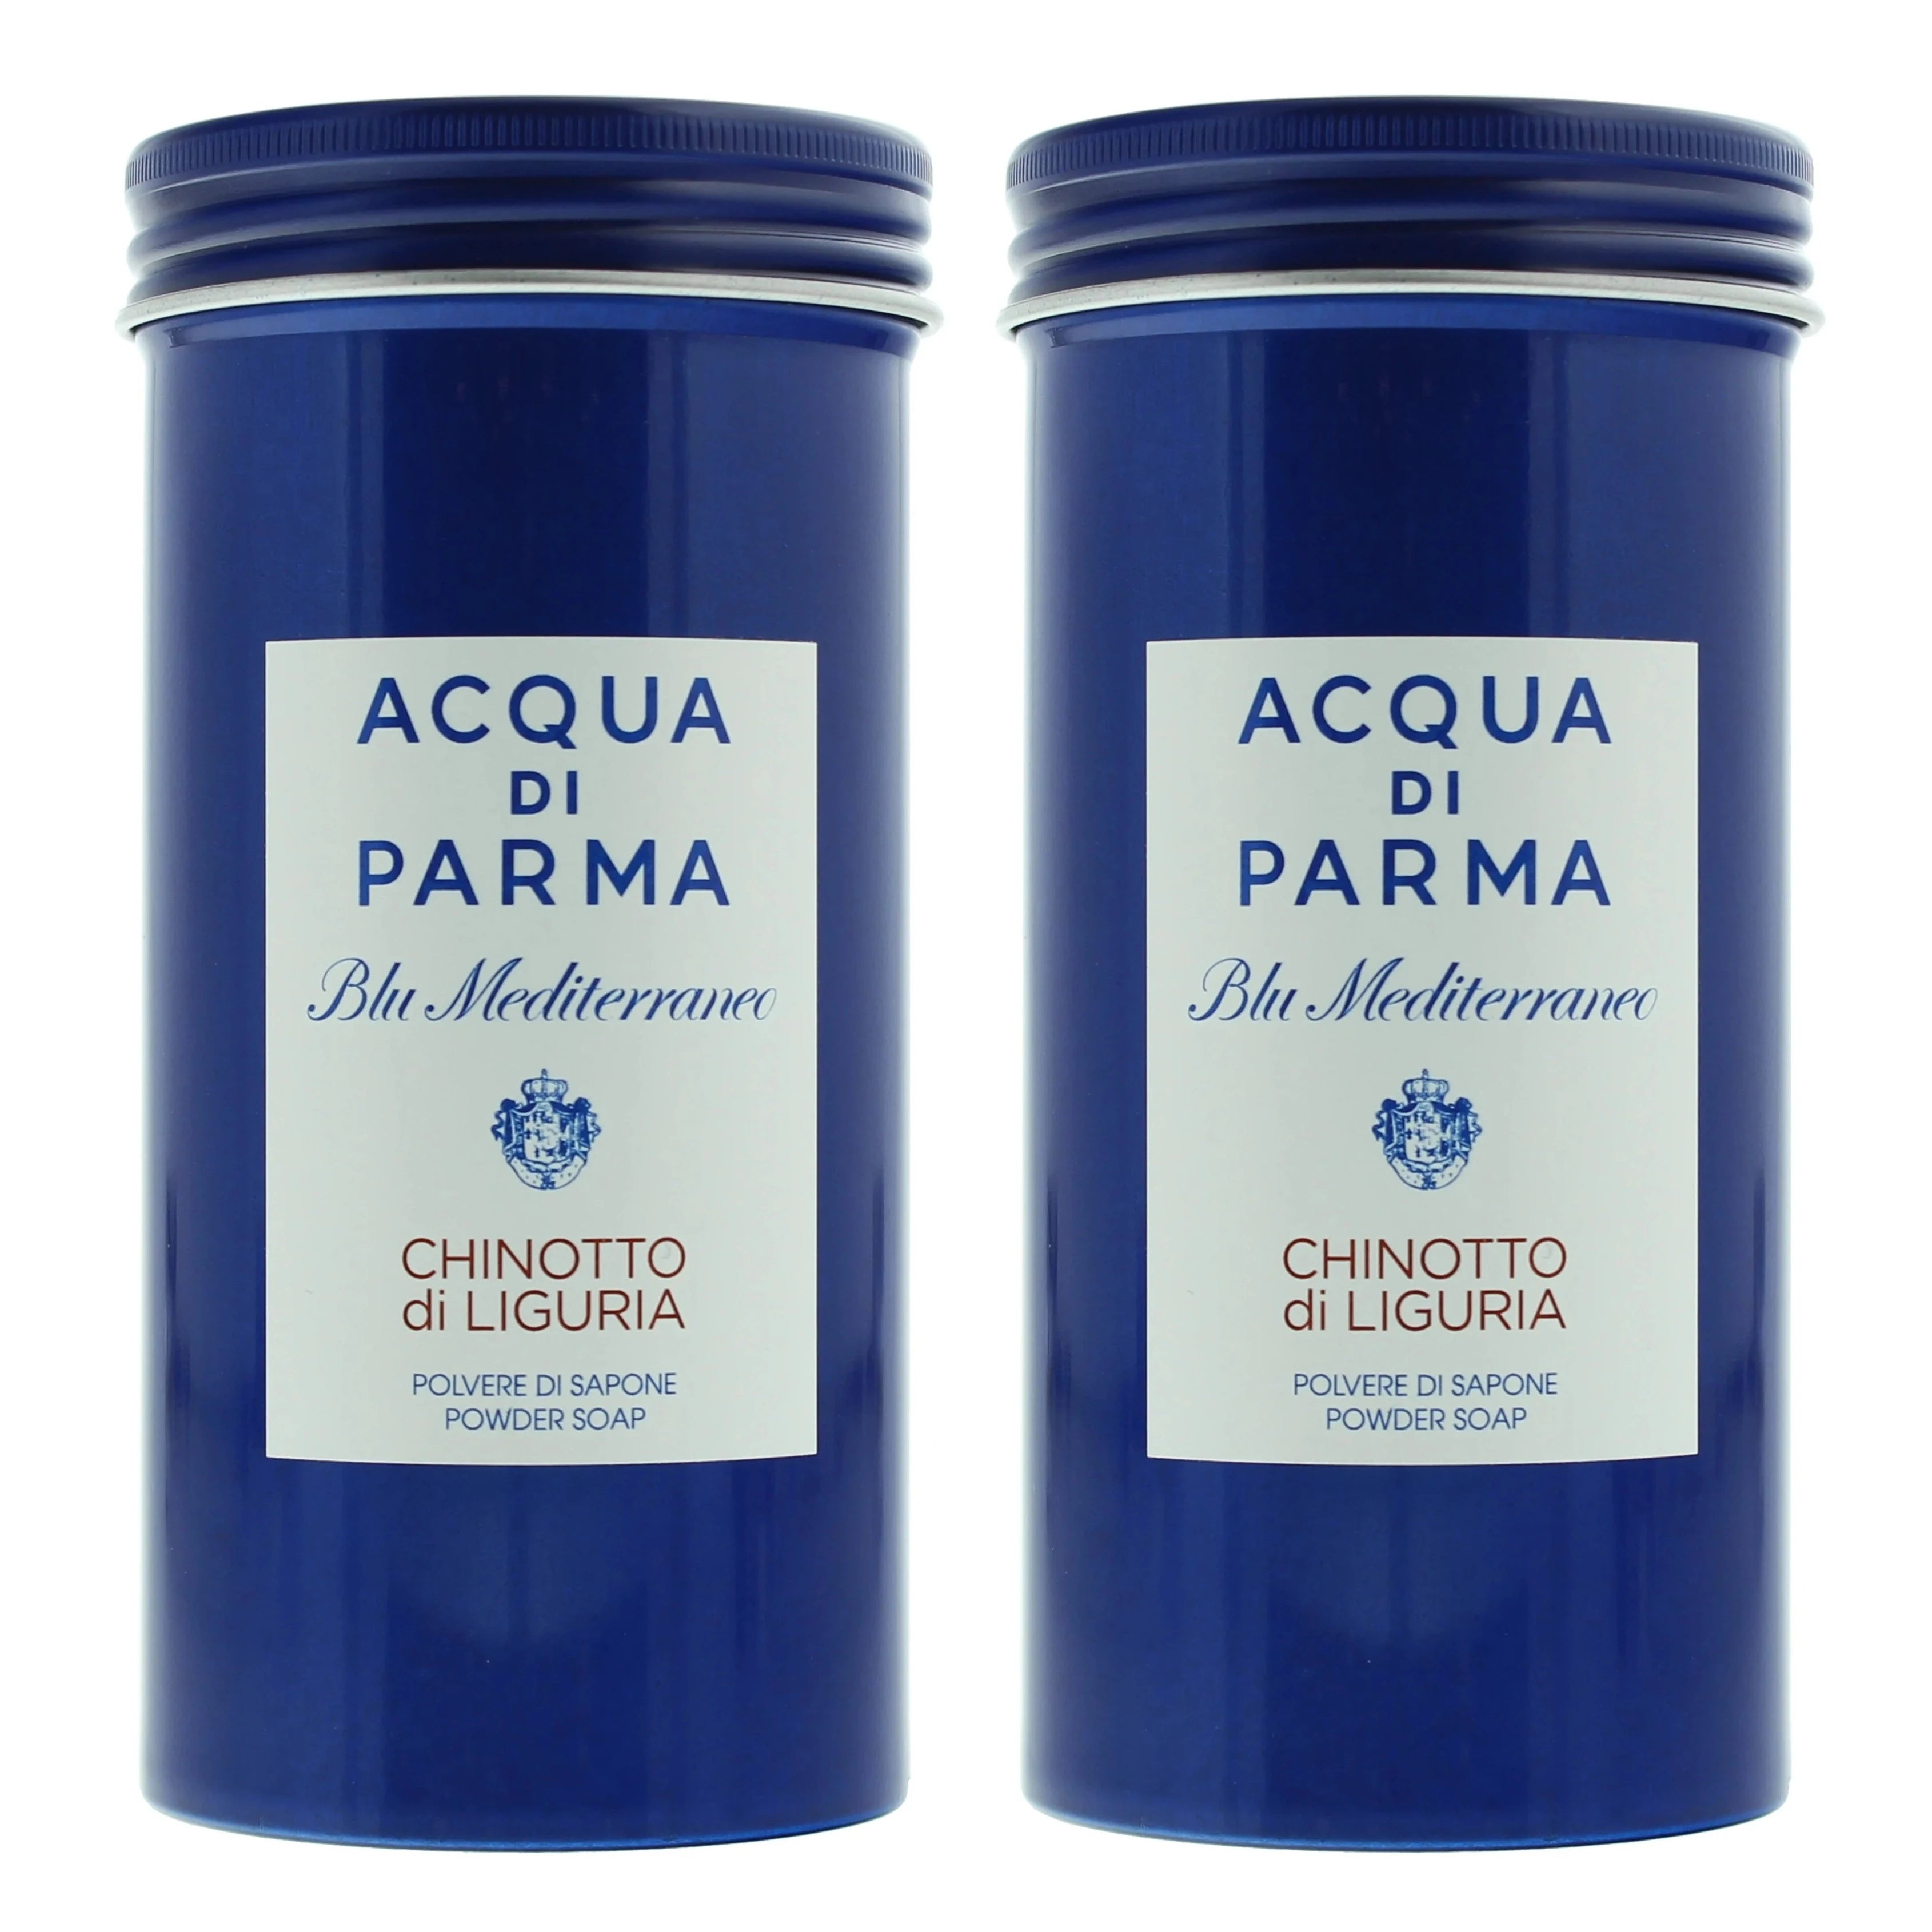 Acqua Di Parma Blu Mediterraneo Chinotto Di Liguria Powder Soap | My Perfume Shop Australia